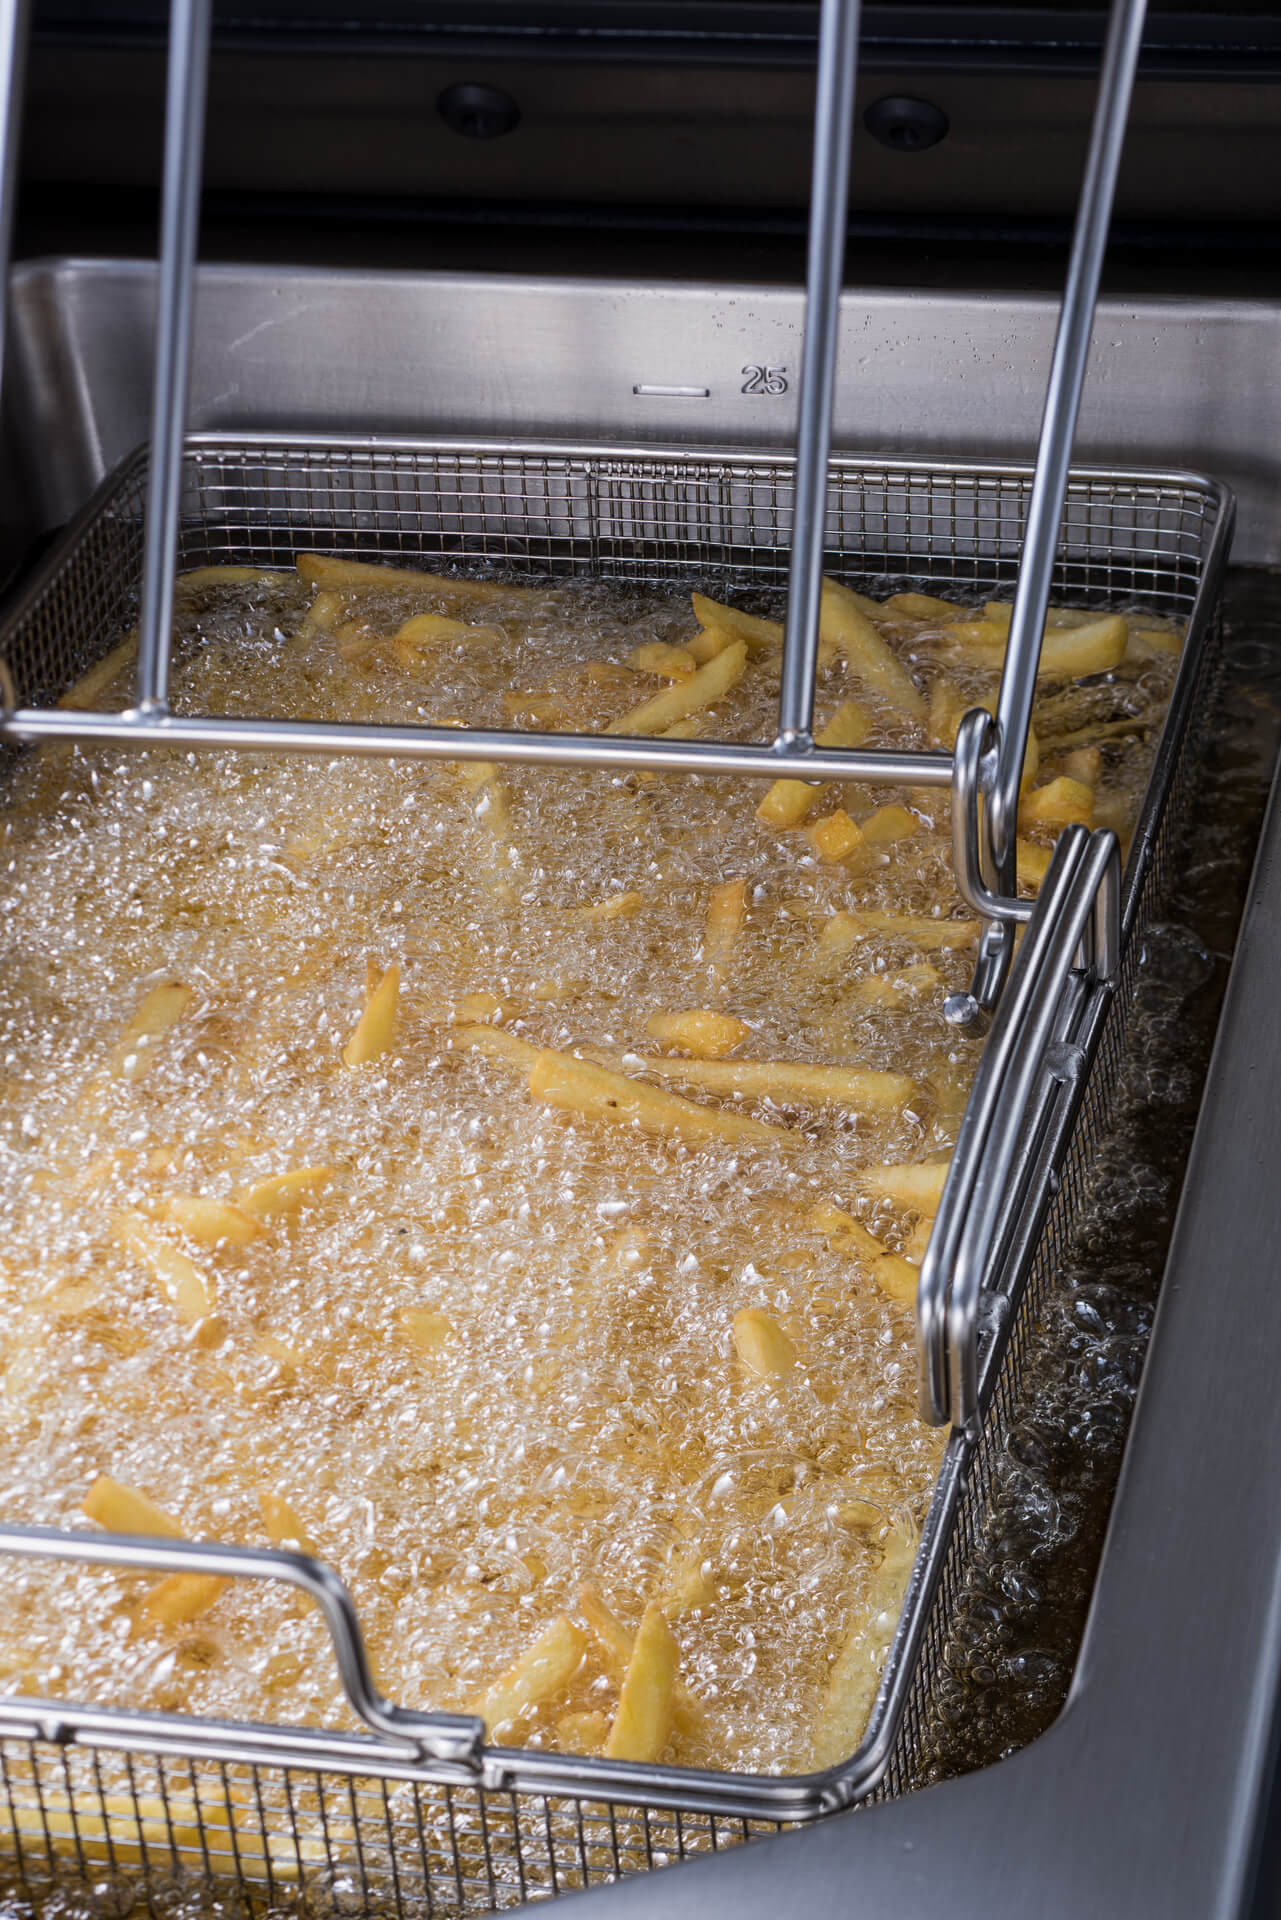 Papas fritas se fríen a la temperatura adecuada: la base para que queden crujientes